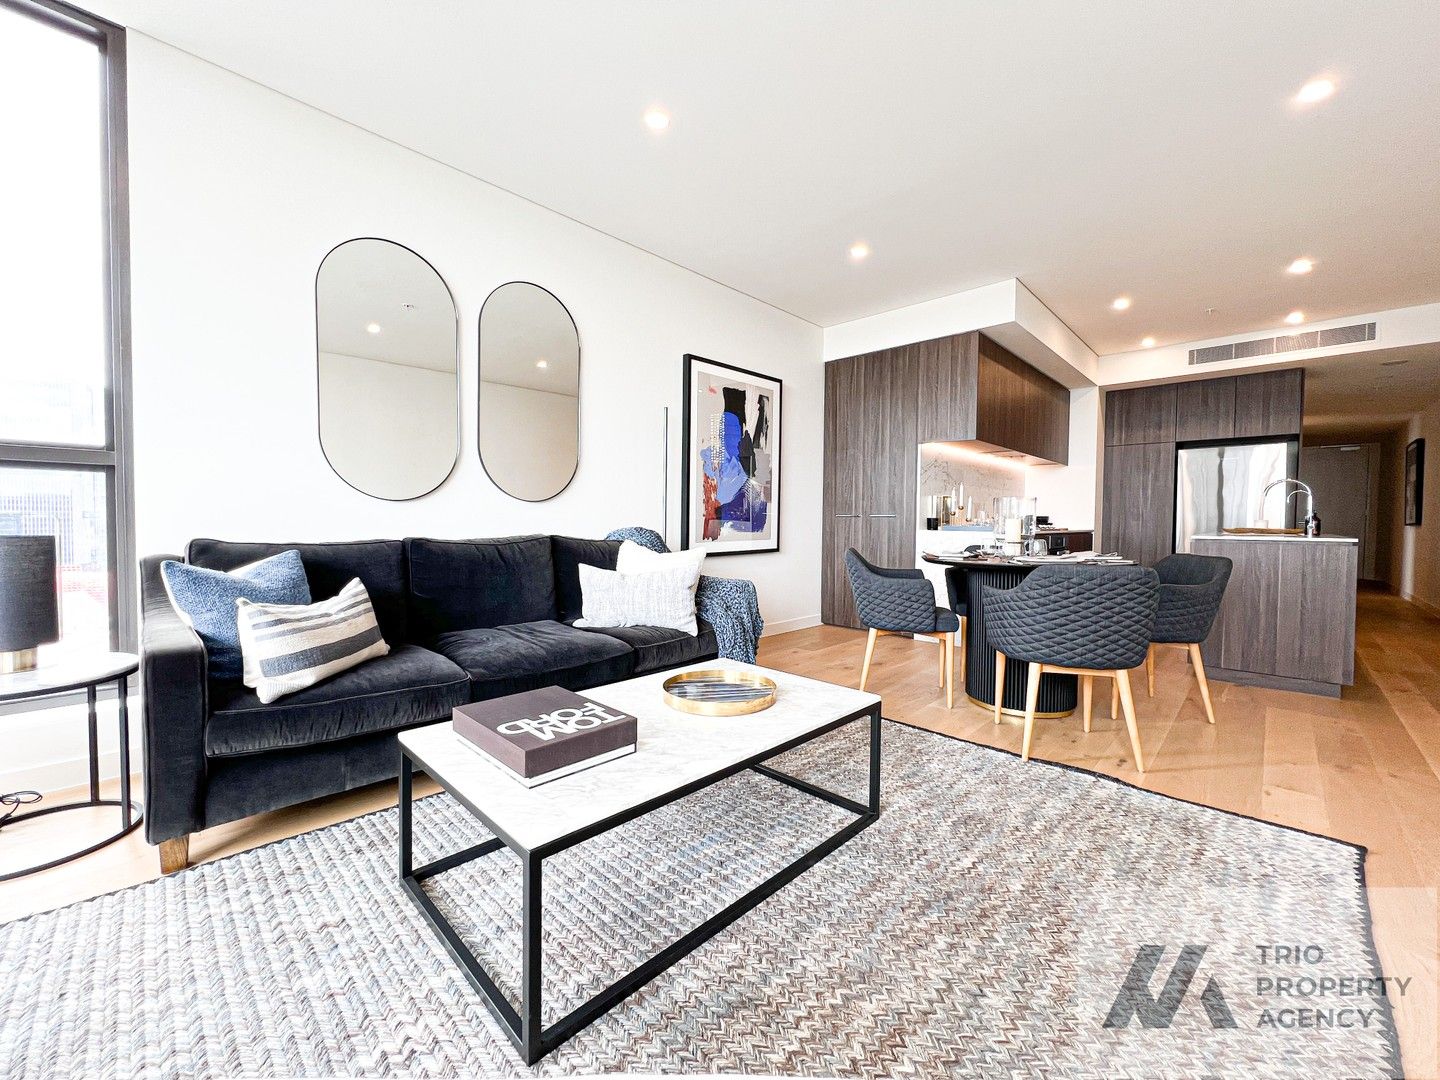 3 bedrooms Apartment / Unit / Flat in 1212/12 Phillip Street PARRAMATTA NSW, 2150